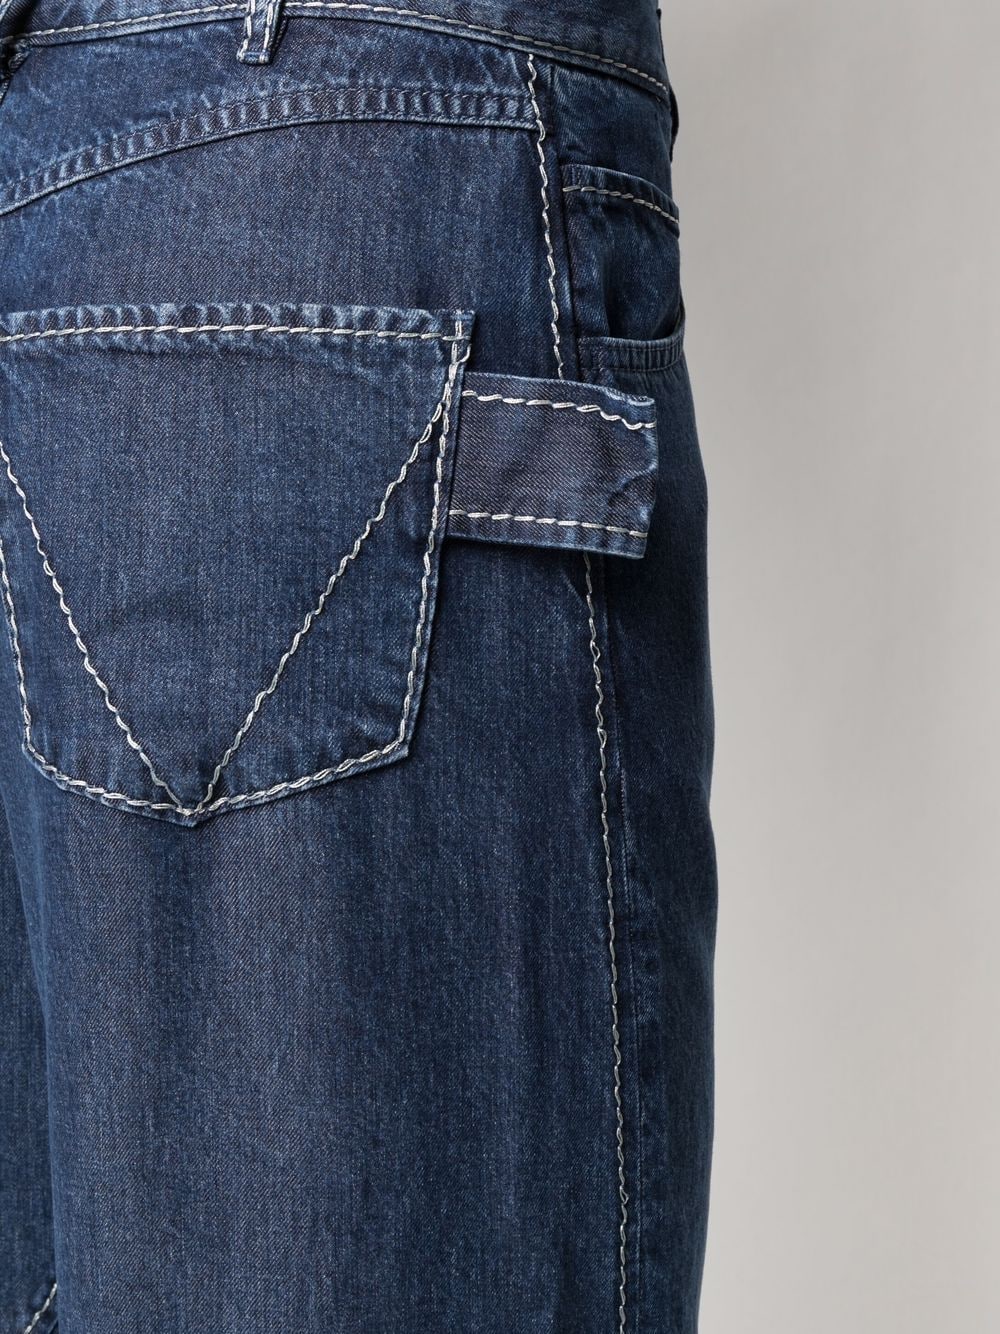 фото Bottega veneta широкие джинсы с эффектом потертости